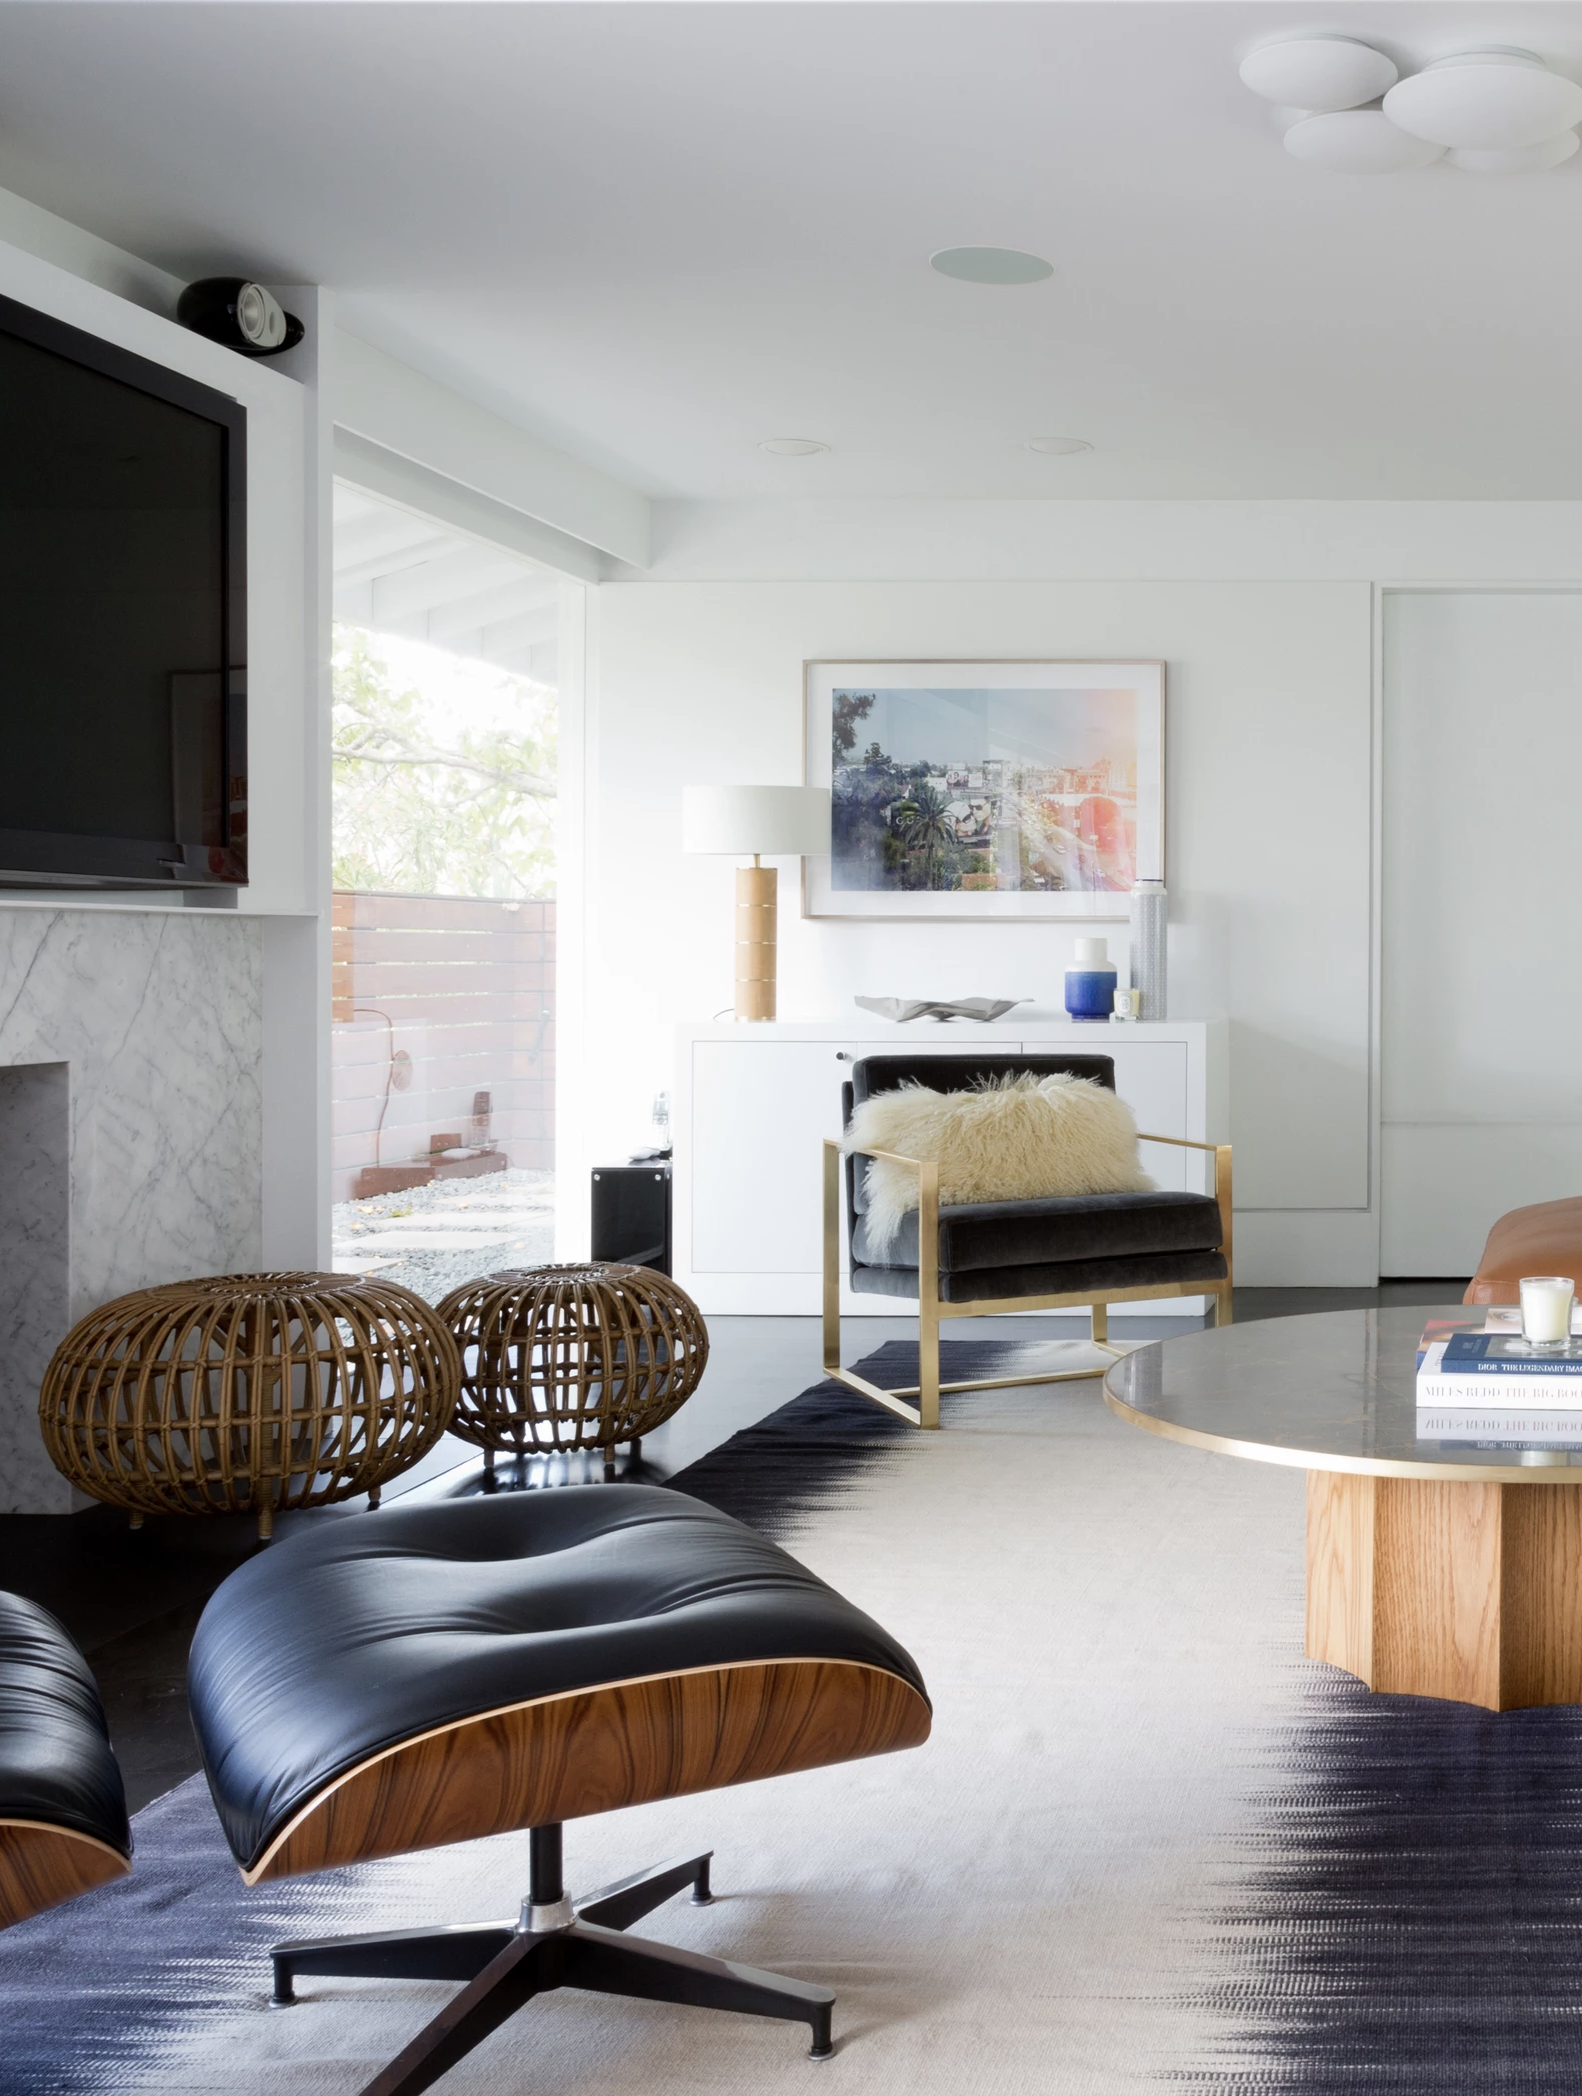 10 Best Modern Living Room Design Ideas In 2018 Decor